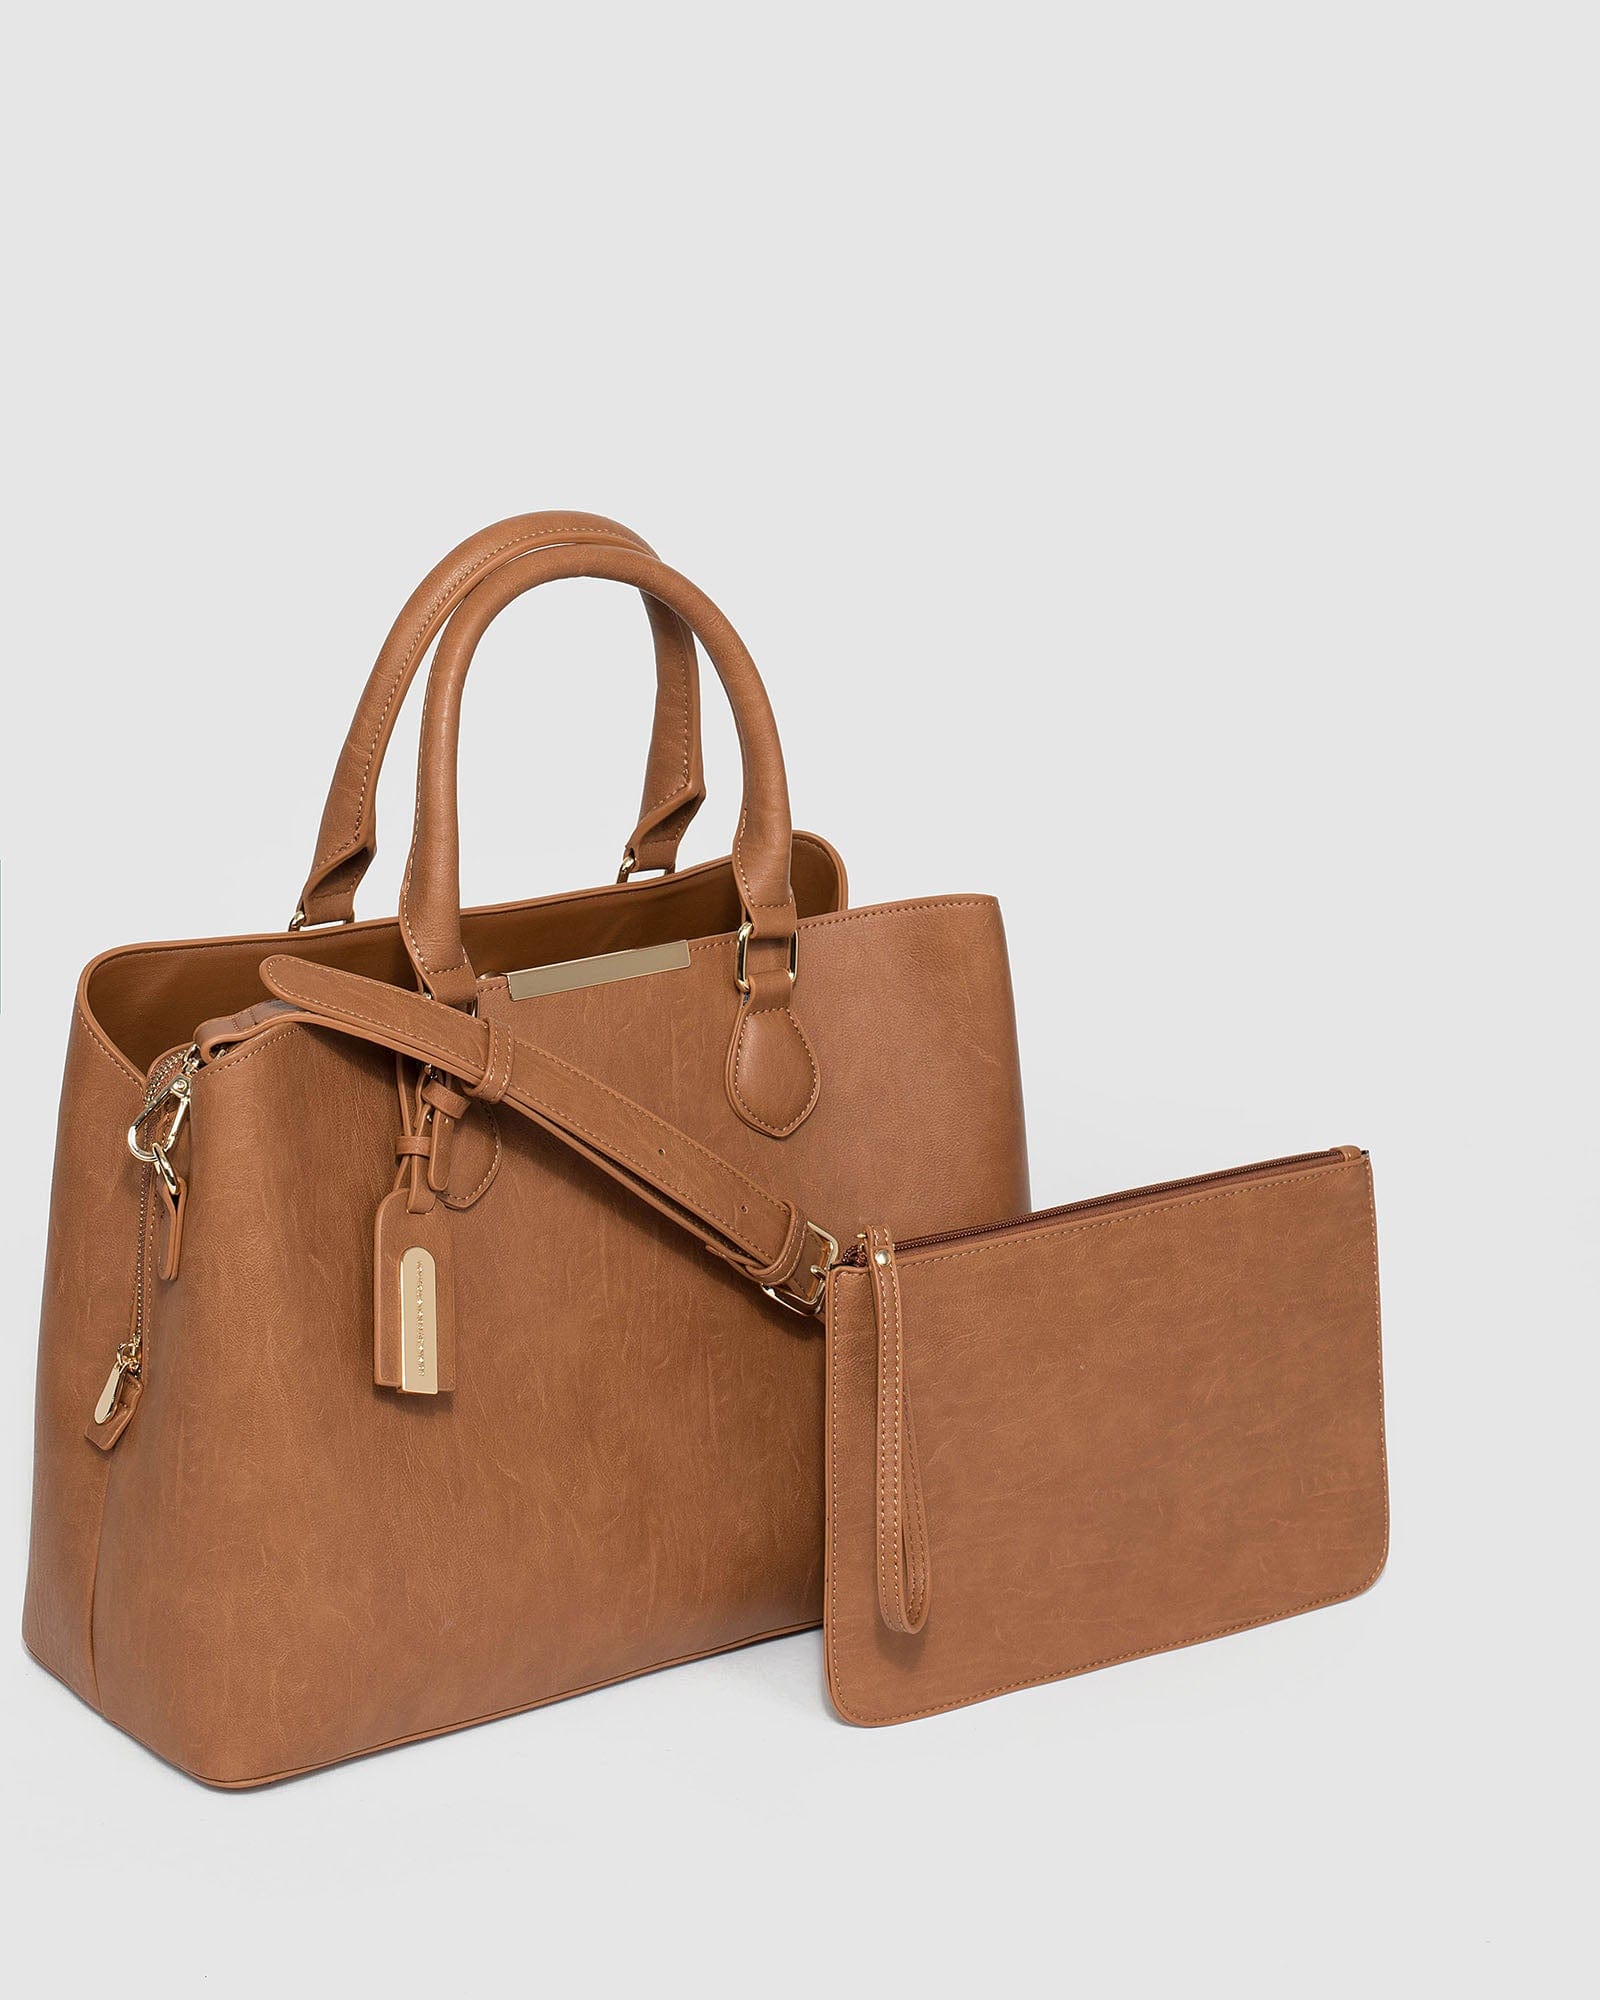 ZARA Round Shopper Bag BRAIDED JUTE Natural CUTOUT Tote XL HandBag NWT  6068/304 | eBay